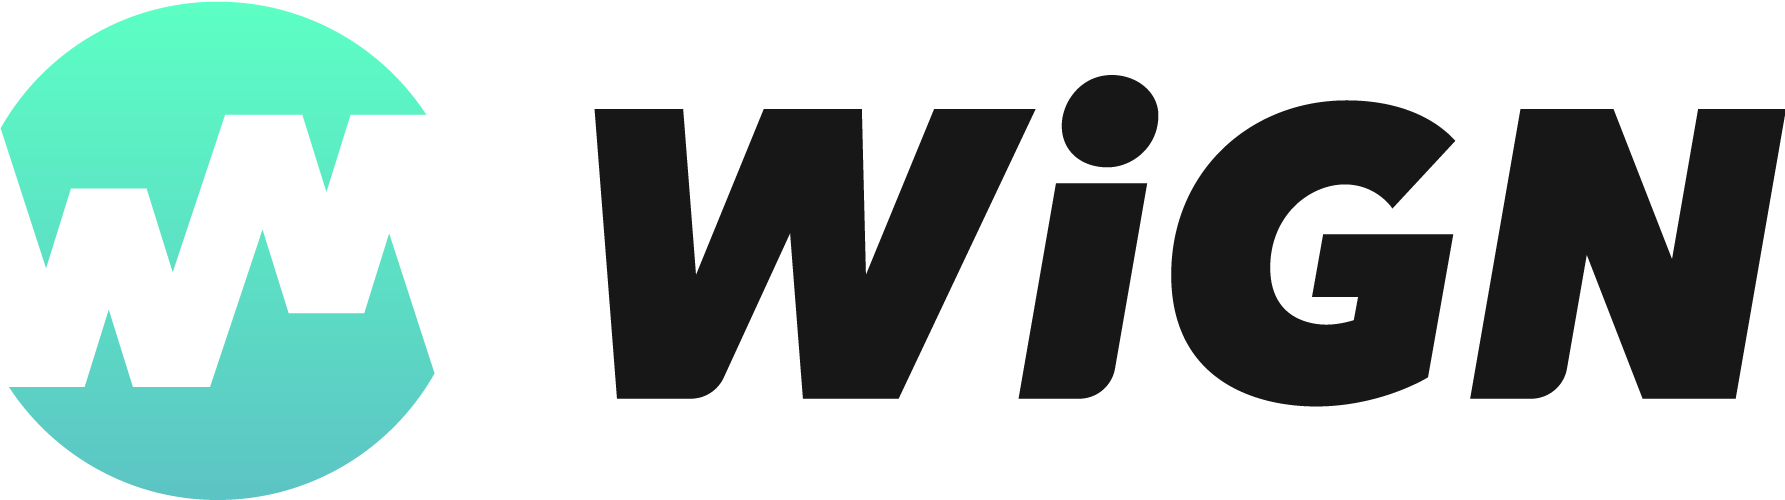 Wign logo